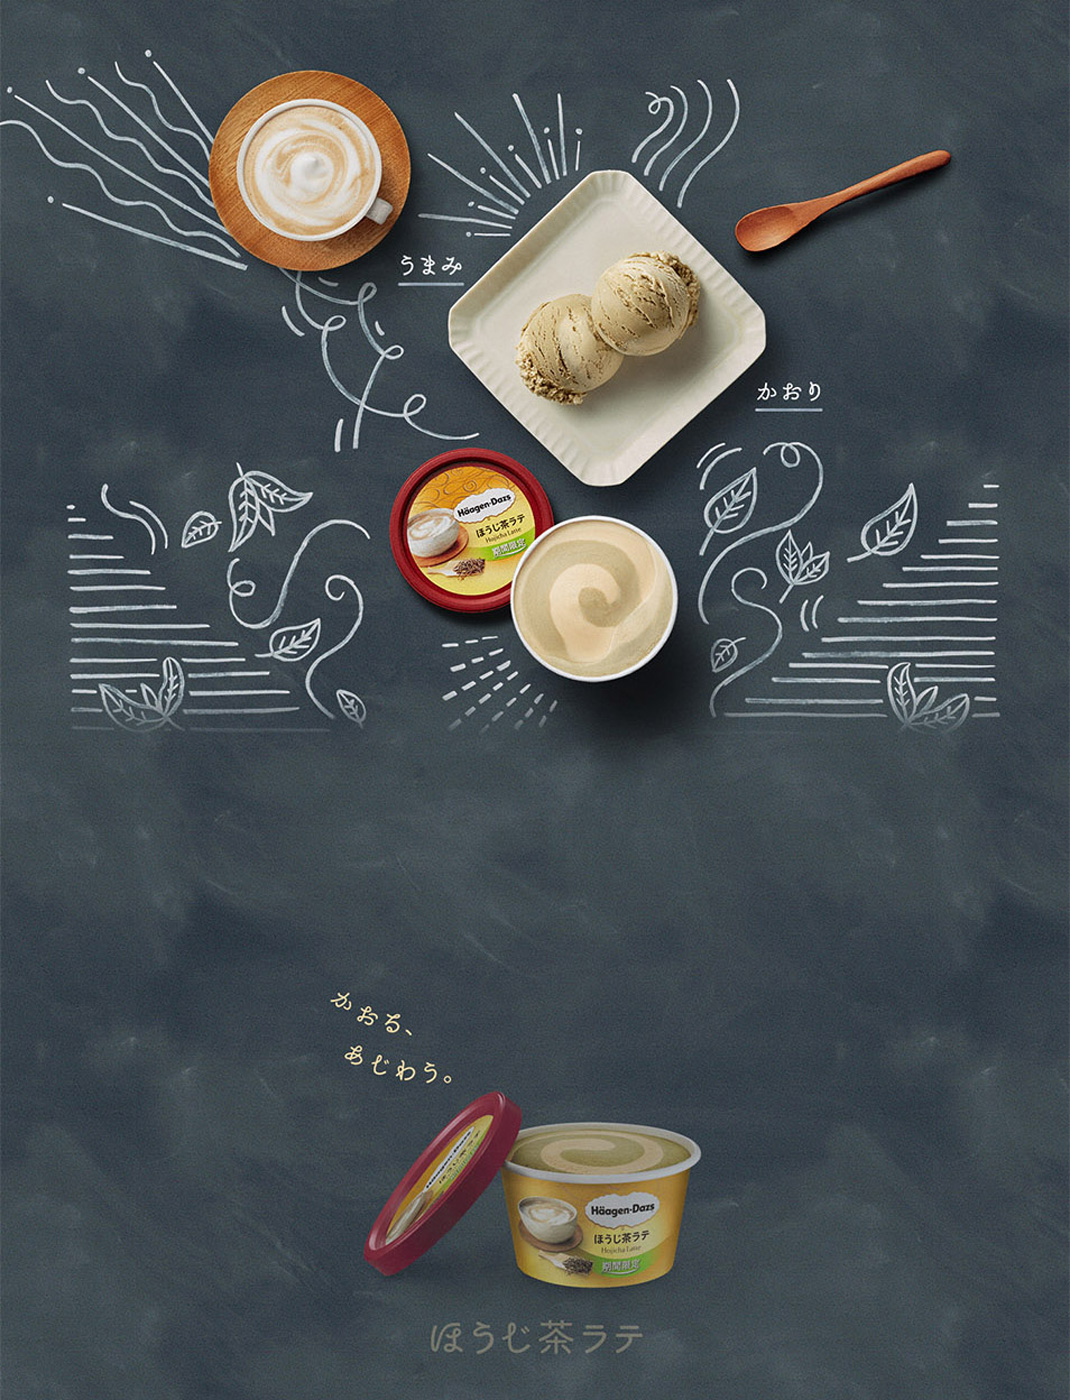 甜品零食点心插画设计 甜品店 零食 下午茶 手绘 插画 海报设计 logo设计 vi设计 空间设计